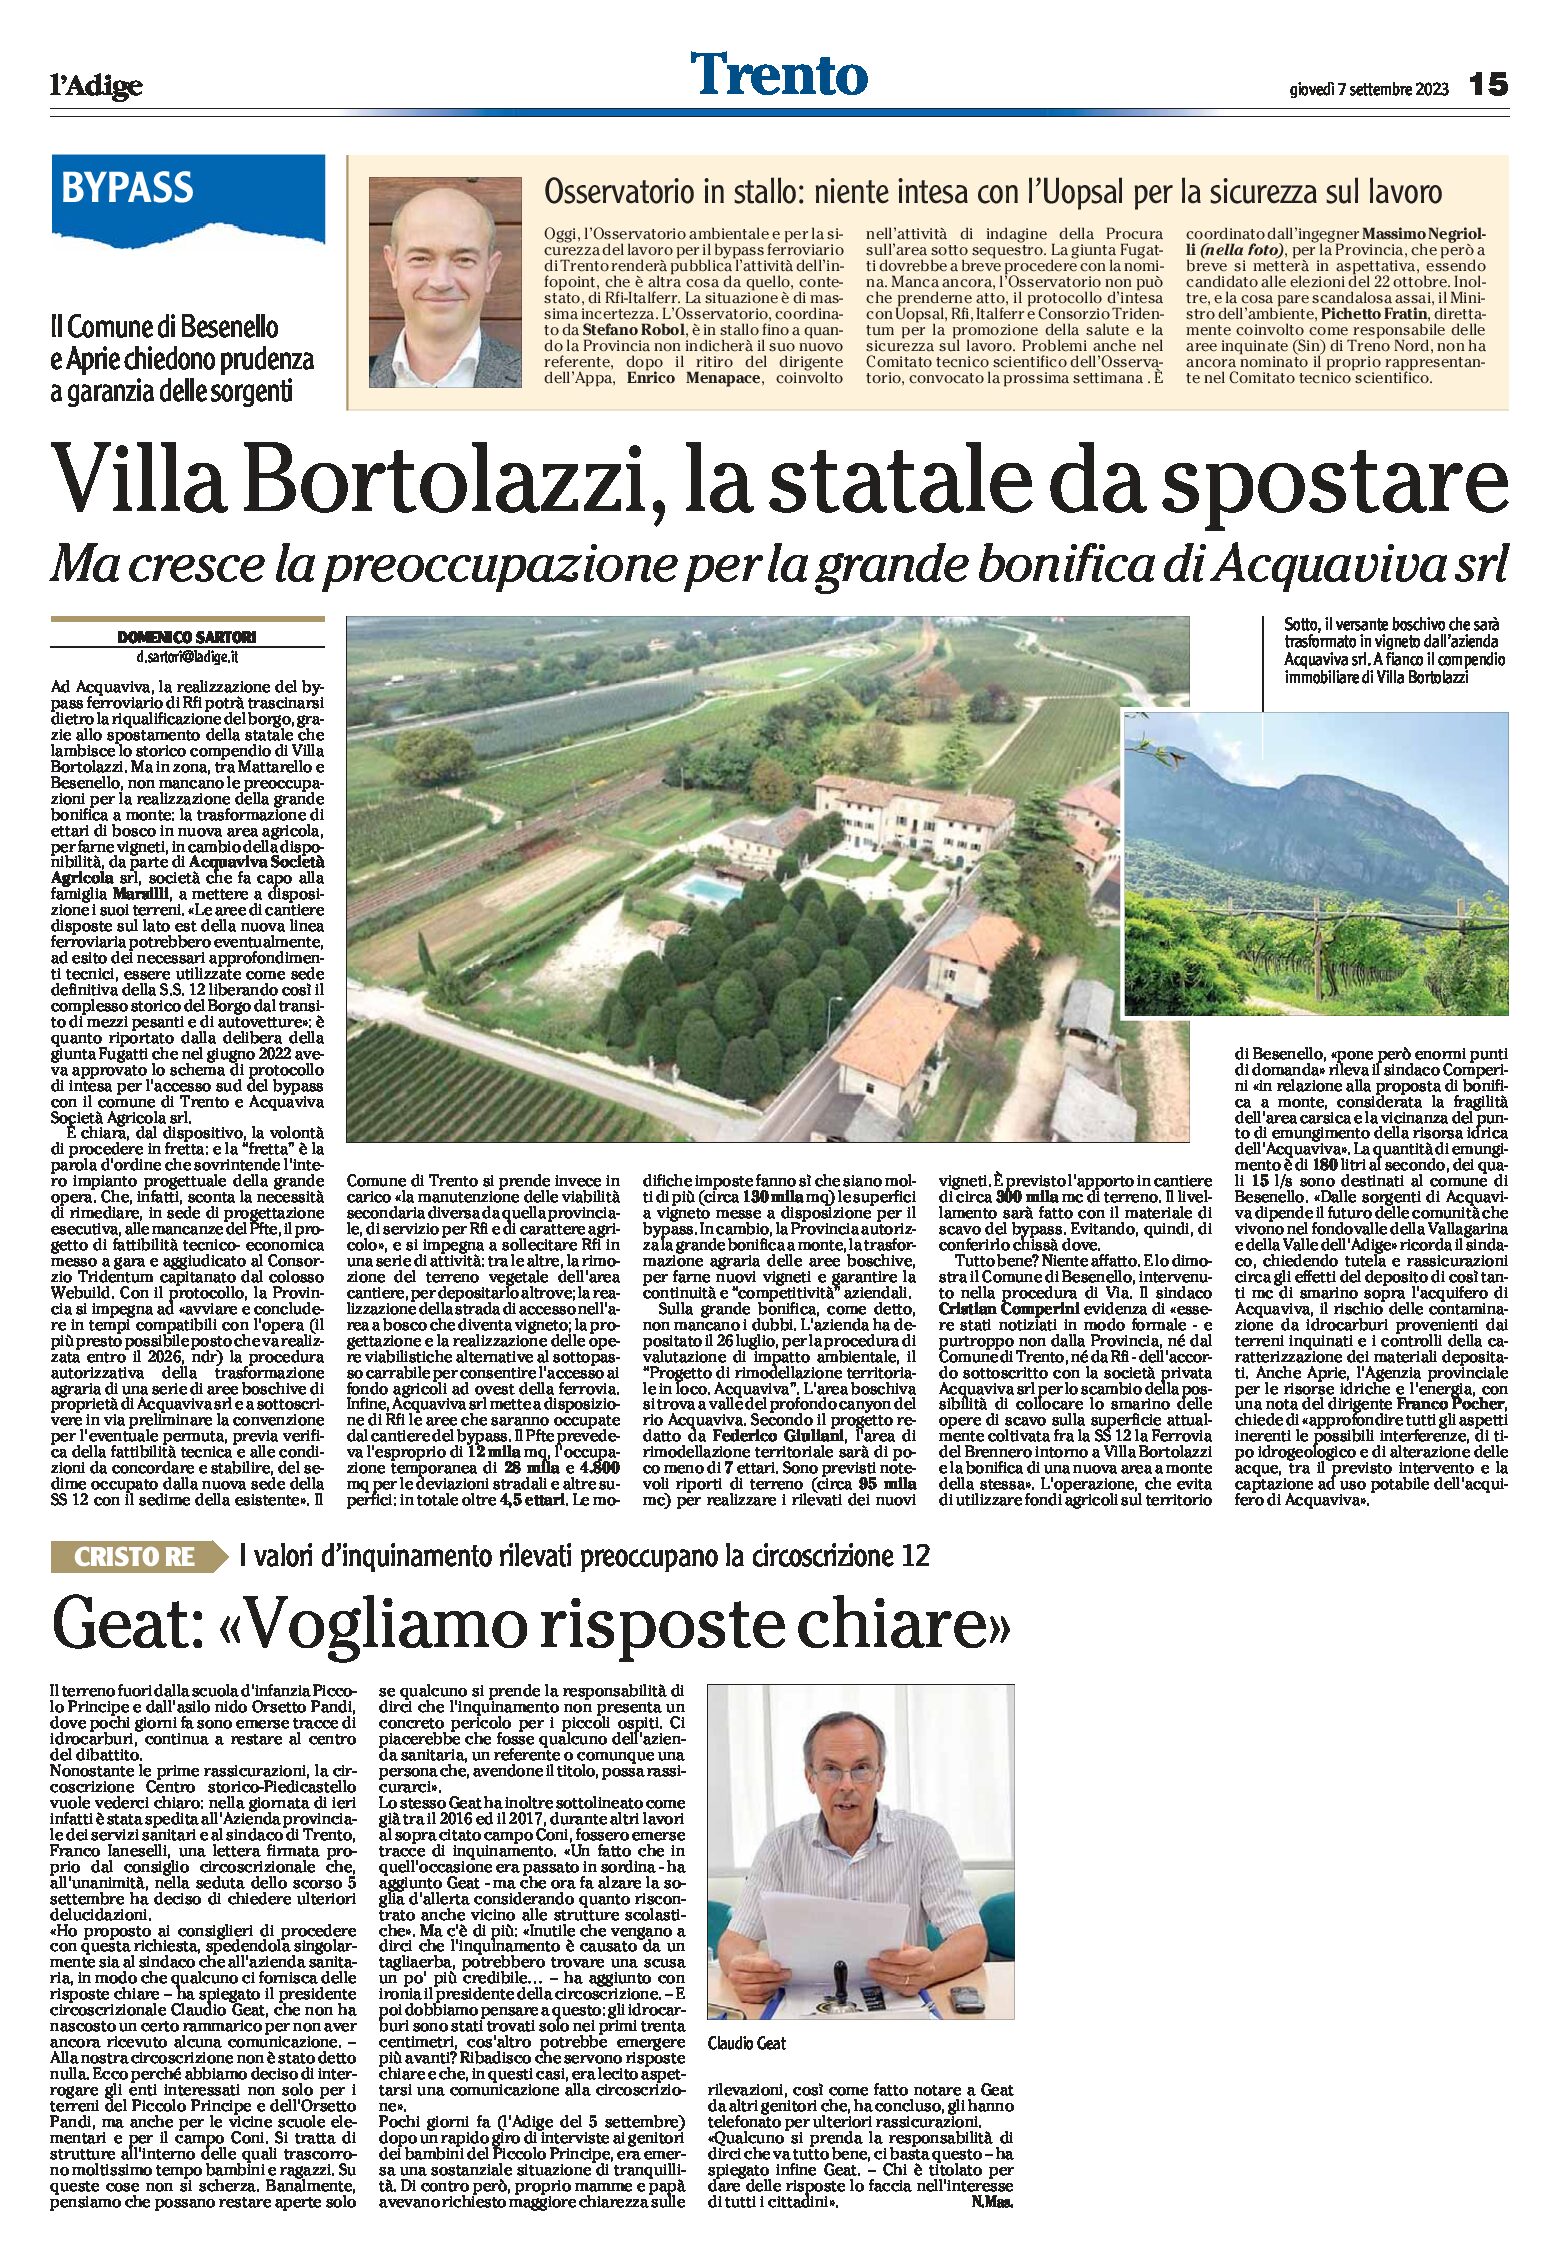 Bypass, Villa Bortolazzi: la statale da spostare. Preoccupazione per la grande bonifica di Acquaviva srl